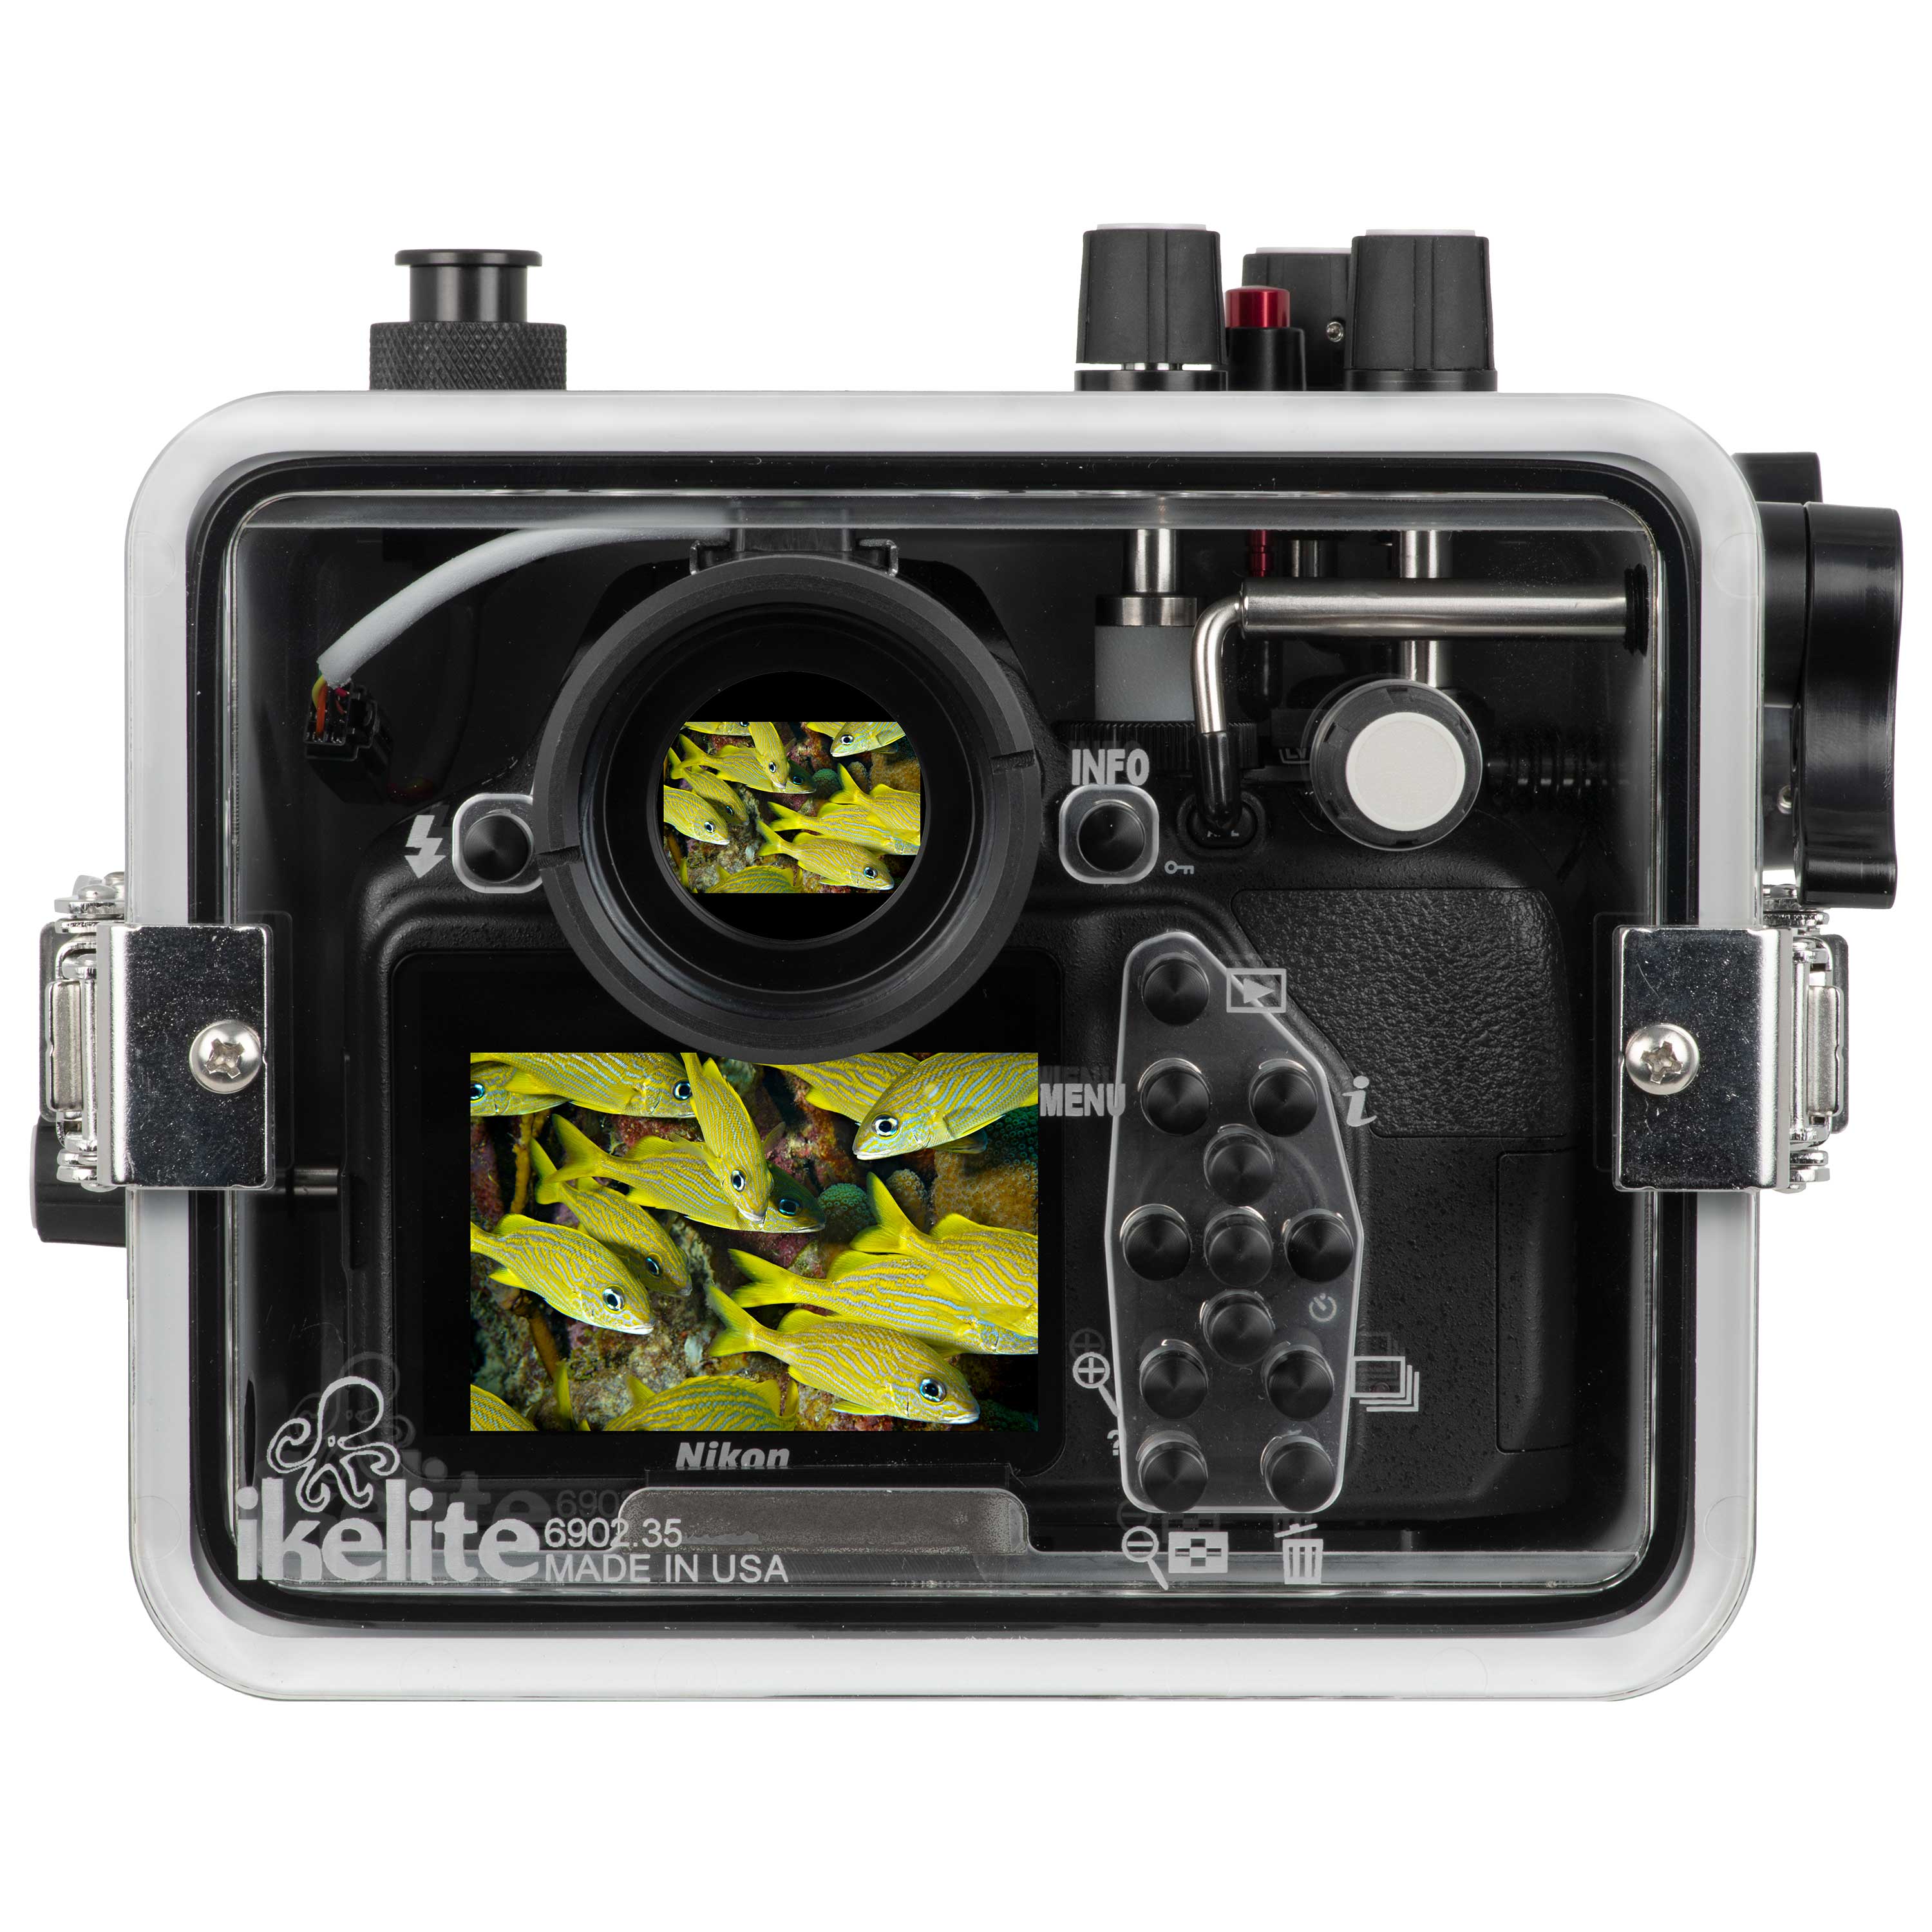 200DLM/C Underwater TTL Housing for Nikon D5300 DSLR